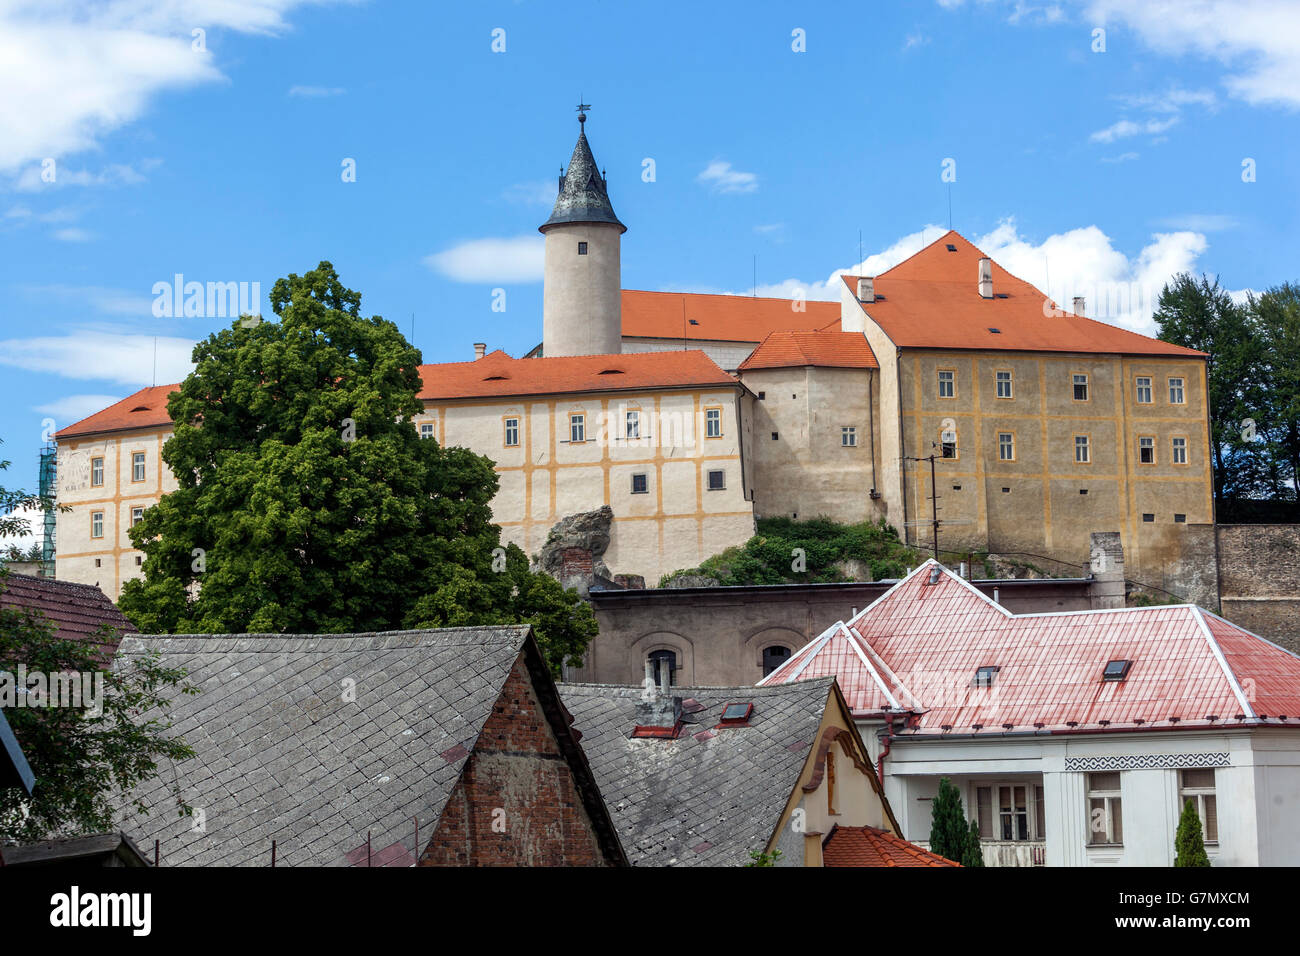 Ledec Nad Sazavou, Gothic Castle Czech Republic Stock Photo